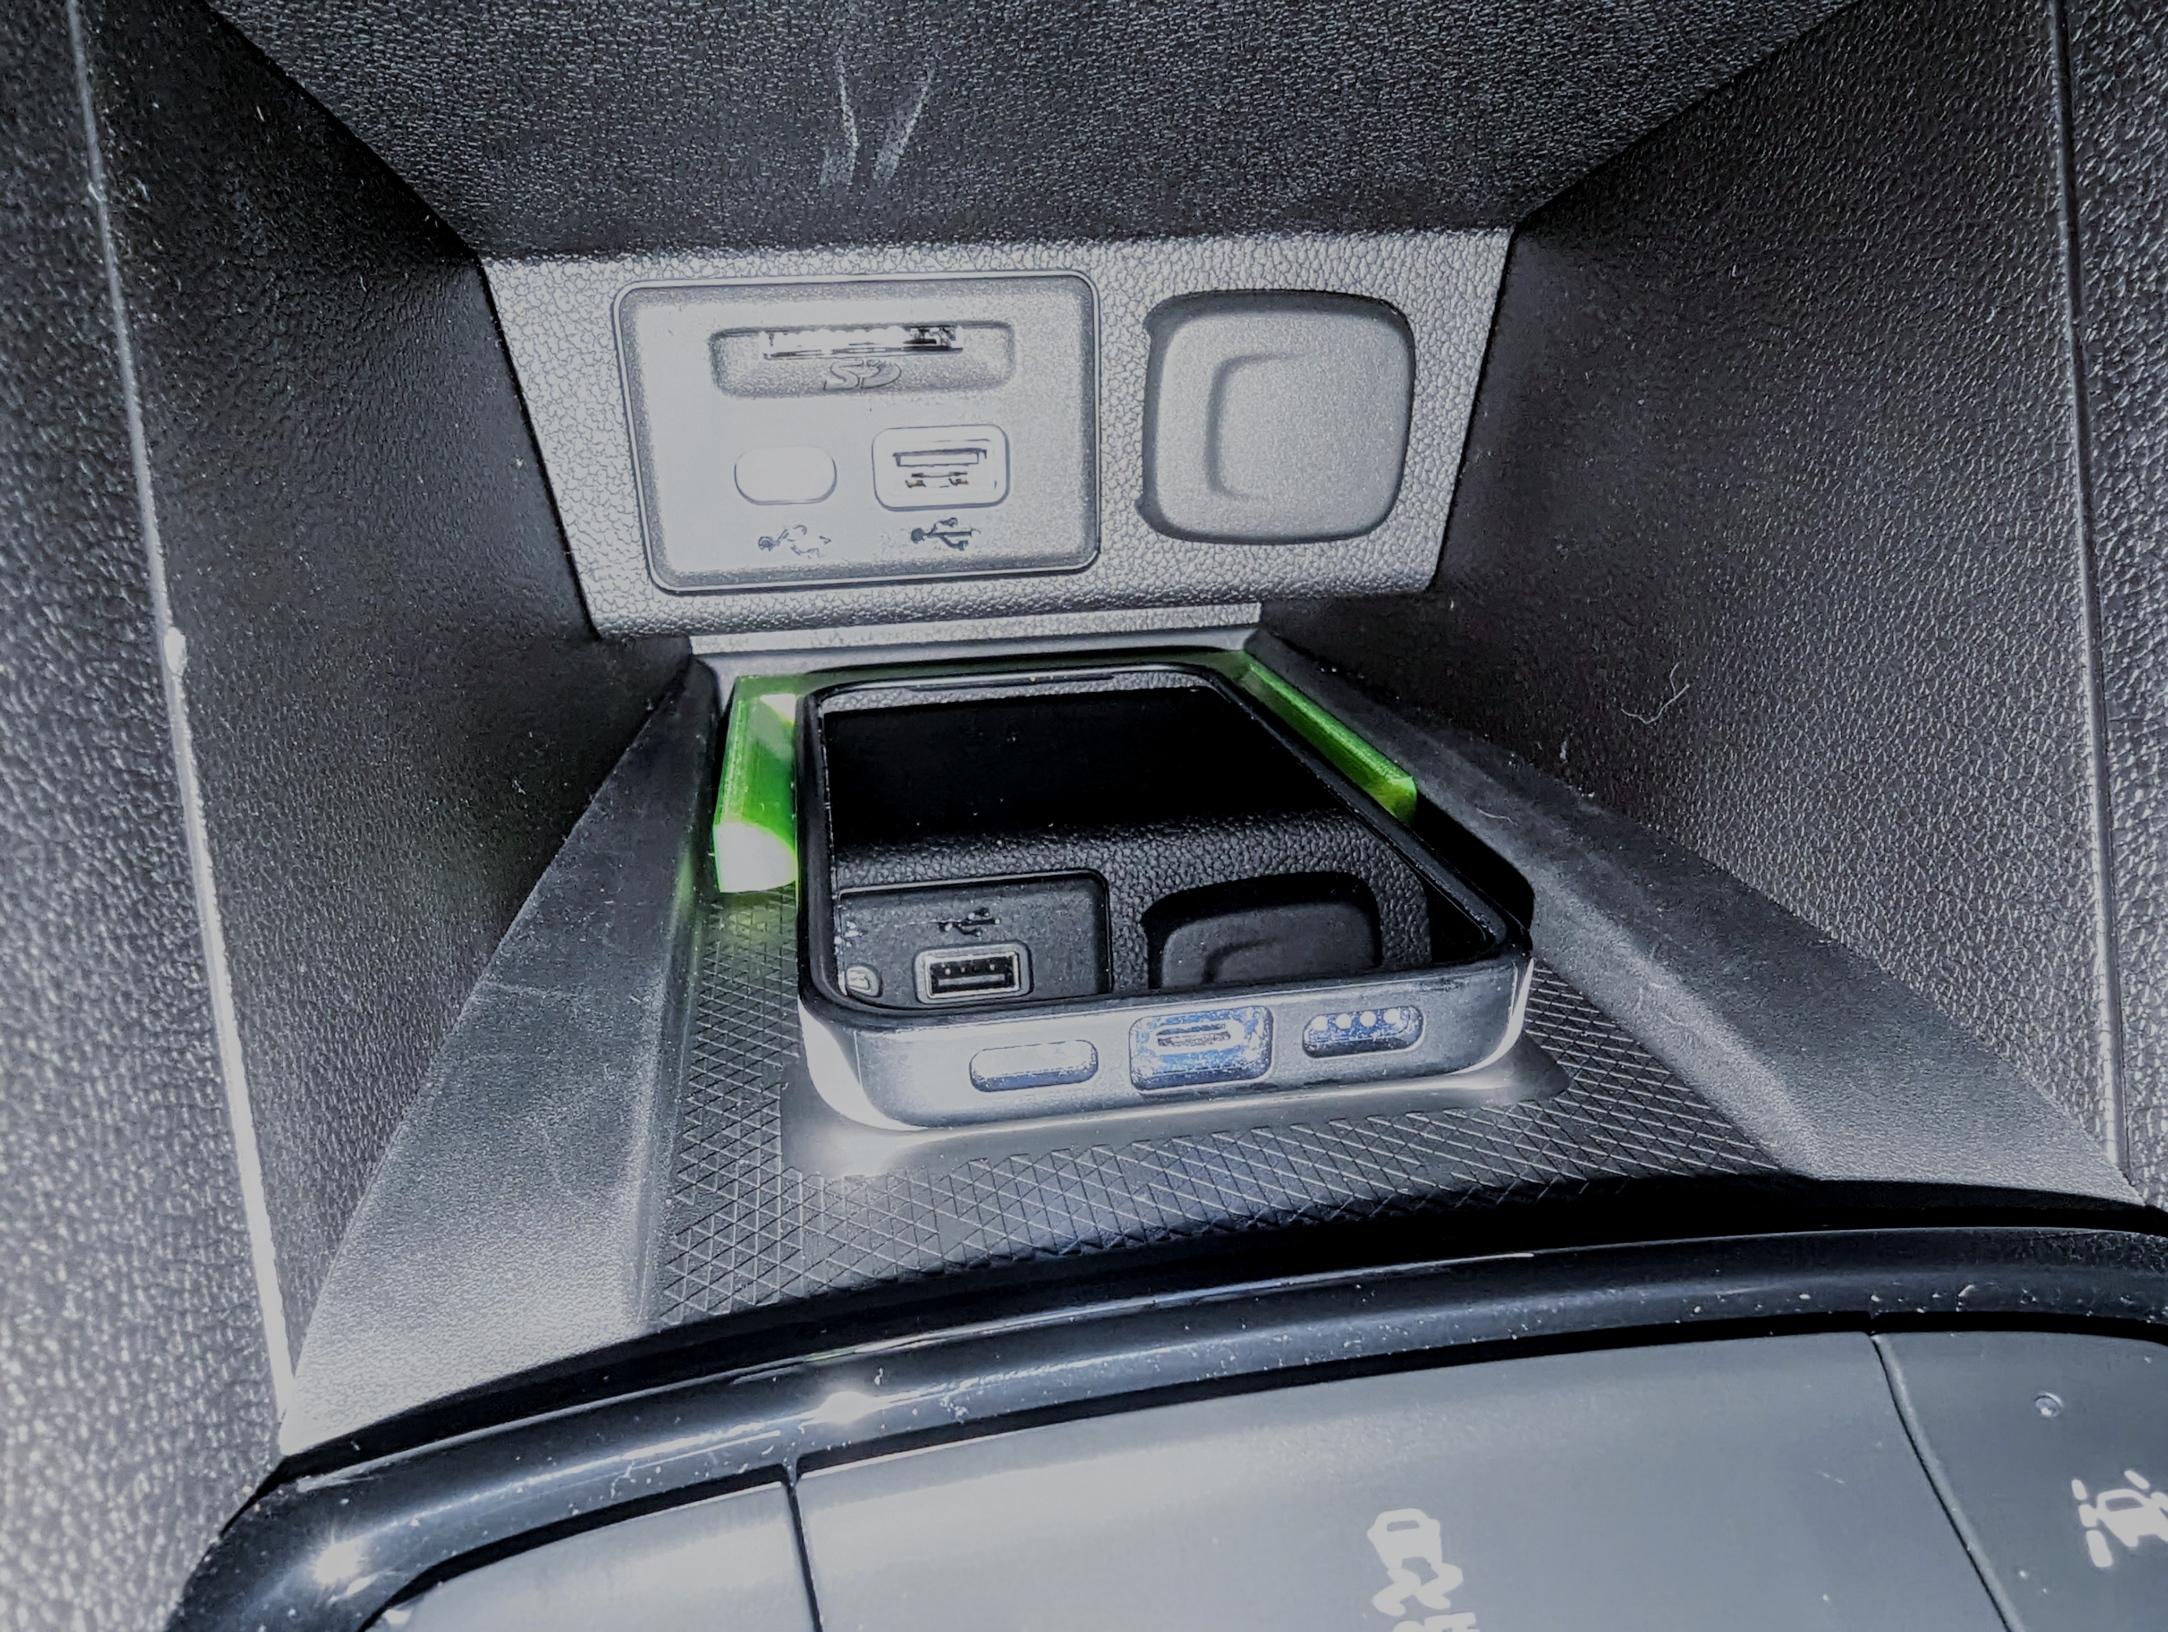 2023 Bolt EUV iphone mini charging cradle.stl 3d model